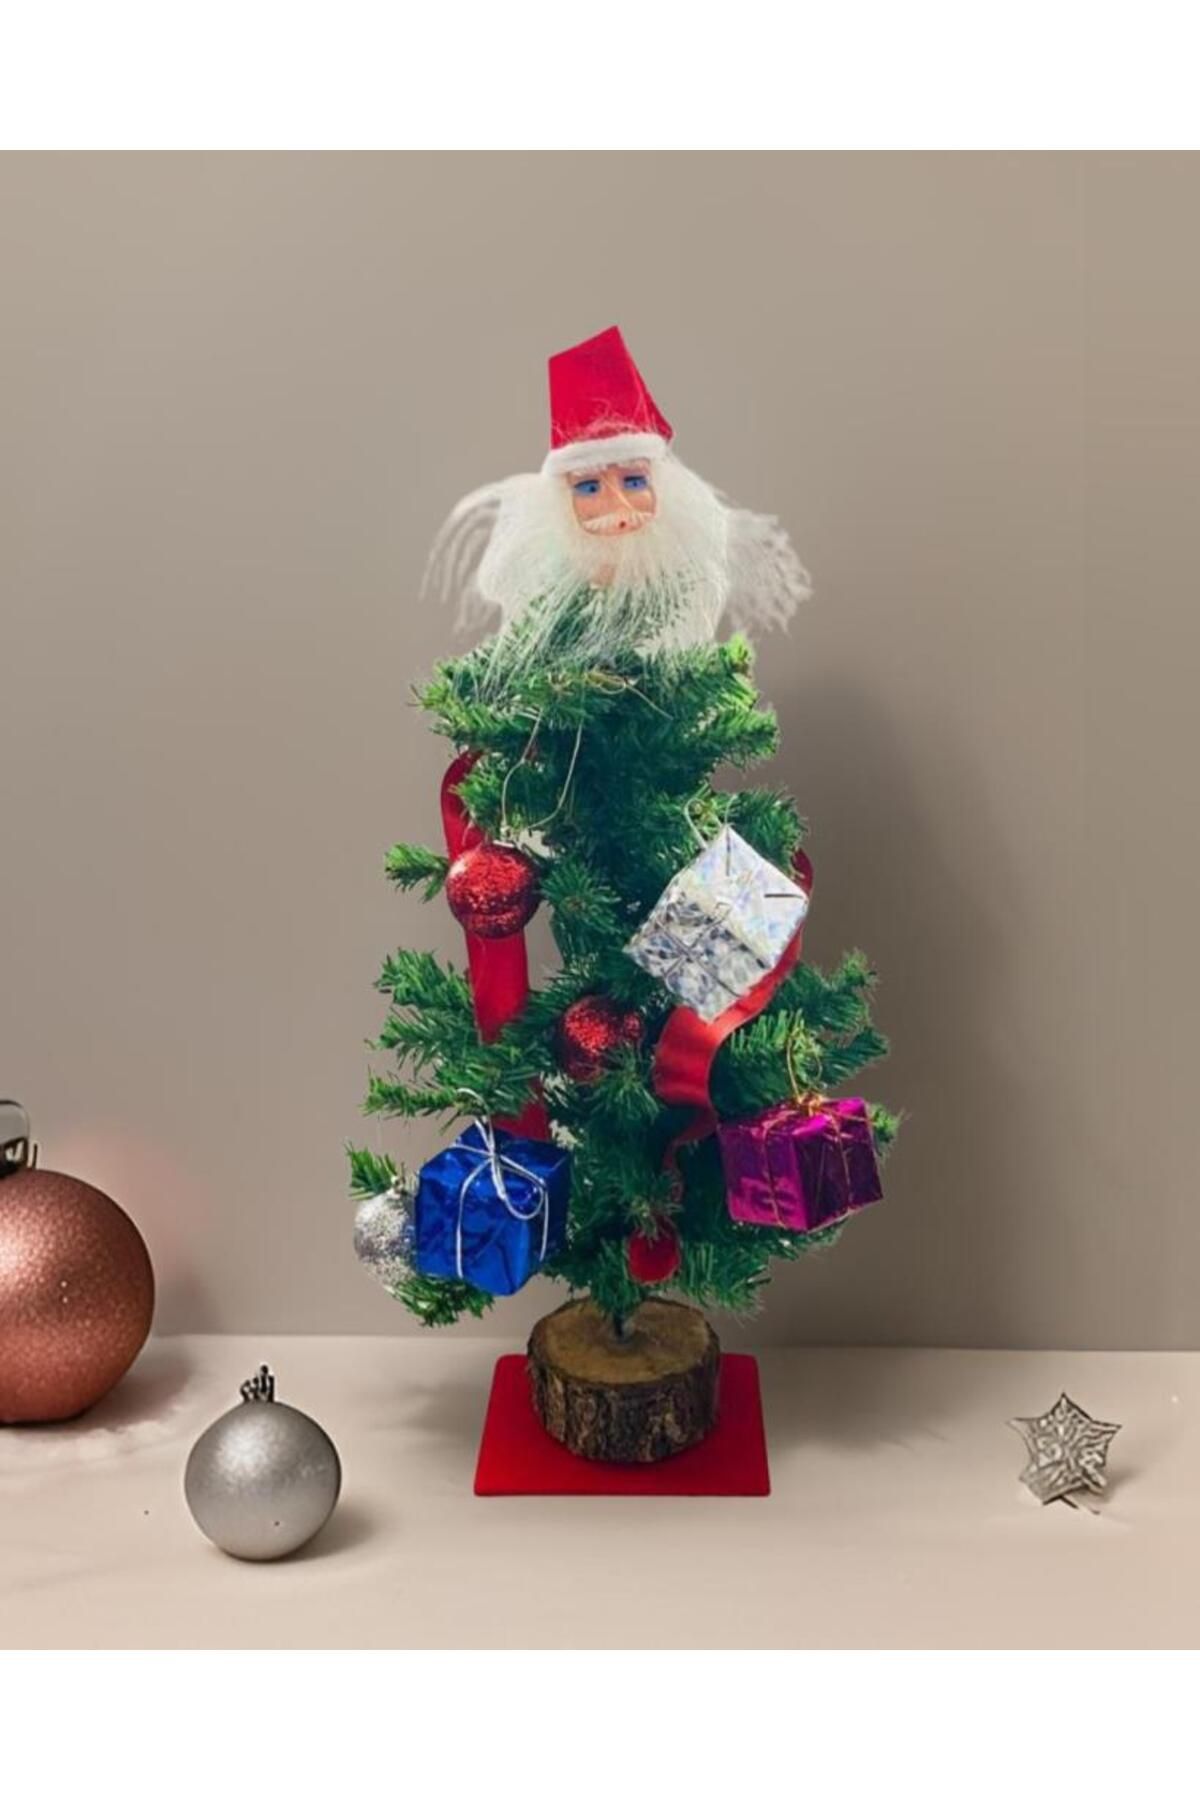 buradanaldım Yılbaşı Ağacı 30 cm Kütüklü, Noel Baba Süs Hediyeli, Yılbaşı Hediyelik, Masa Süsü Dekoratif Ağaç